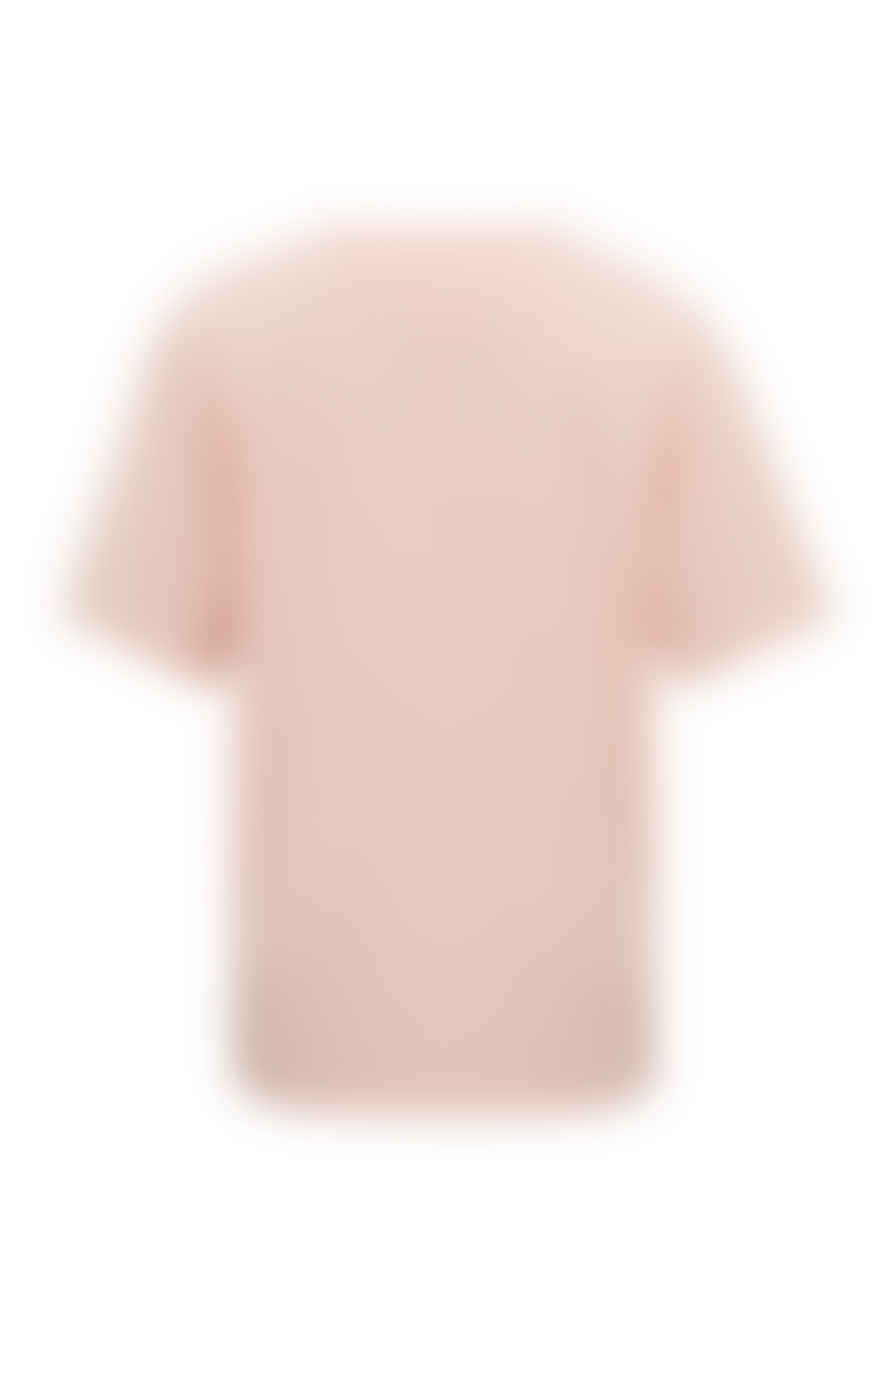 Yaya Pale Blush Pink Oversized T-shirt